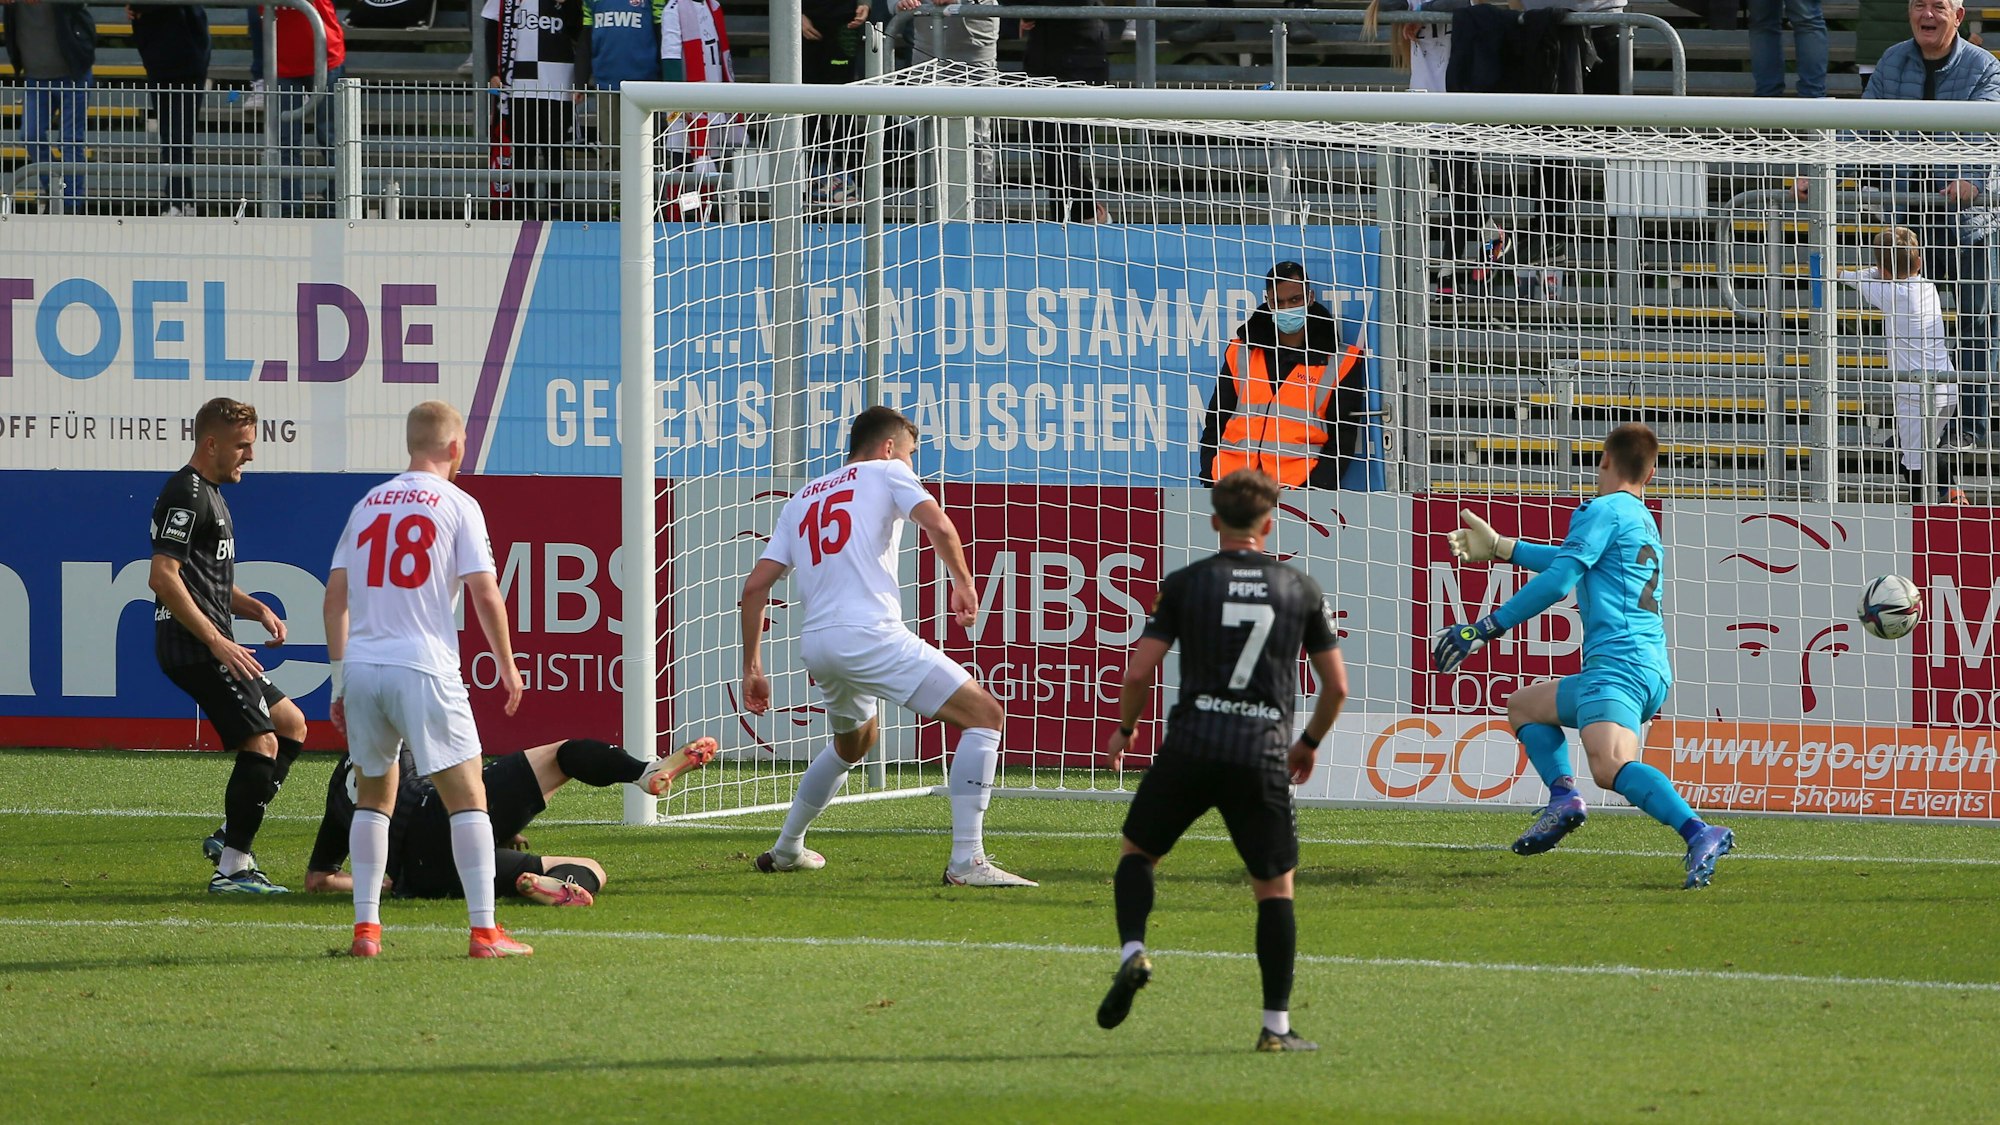 Die Würzburger Kickers treffen zum 1:1-Ausgleich bei Viktoria Köln in der 3. Liga.